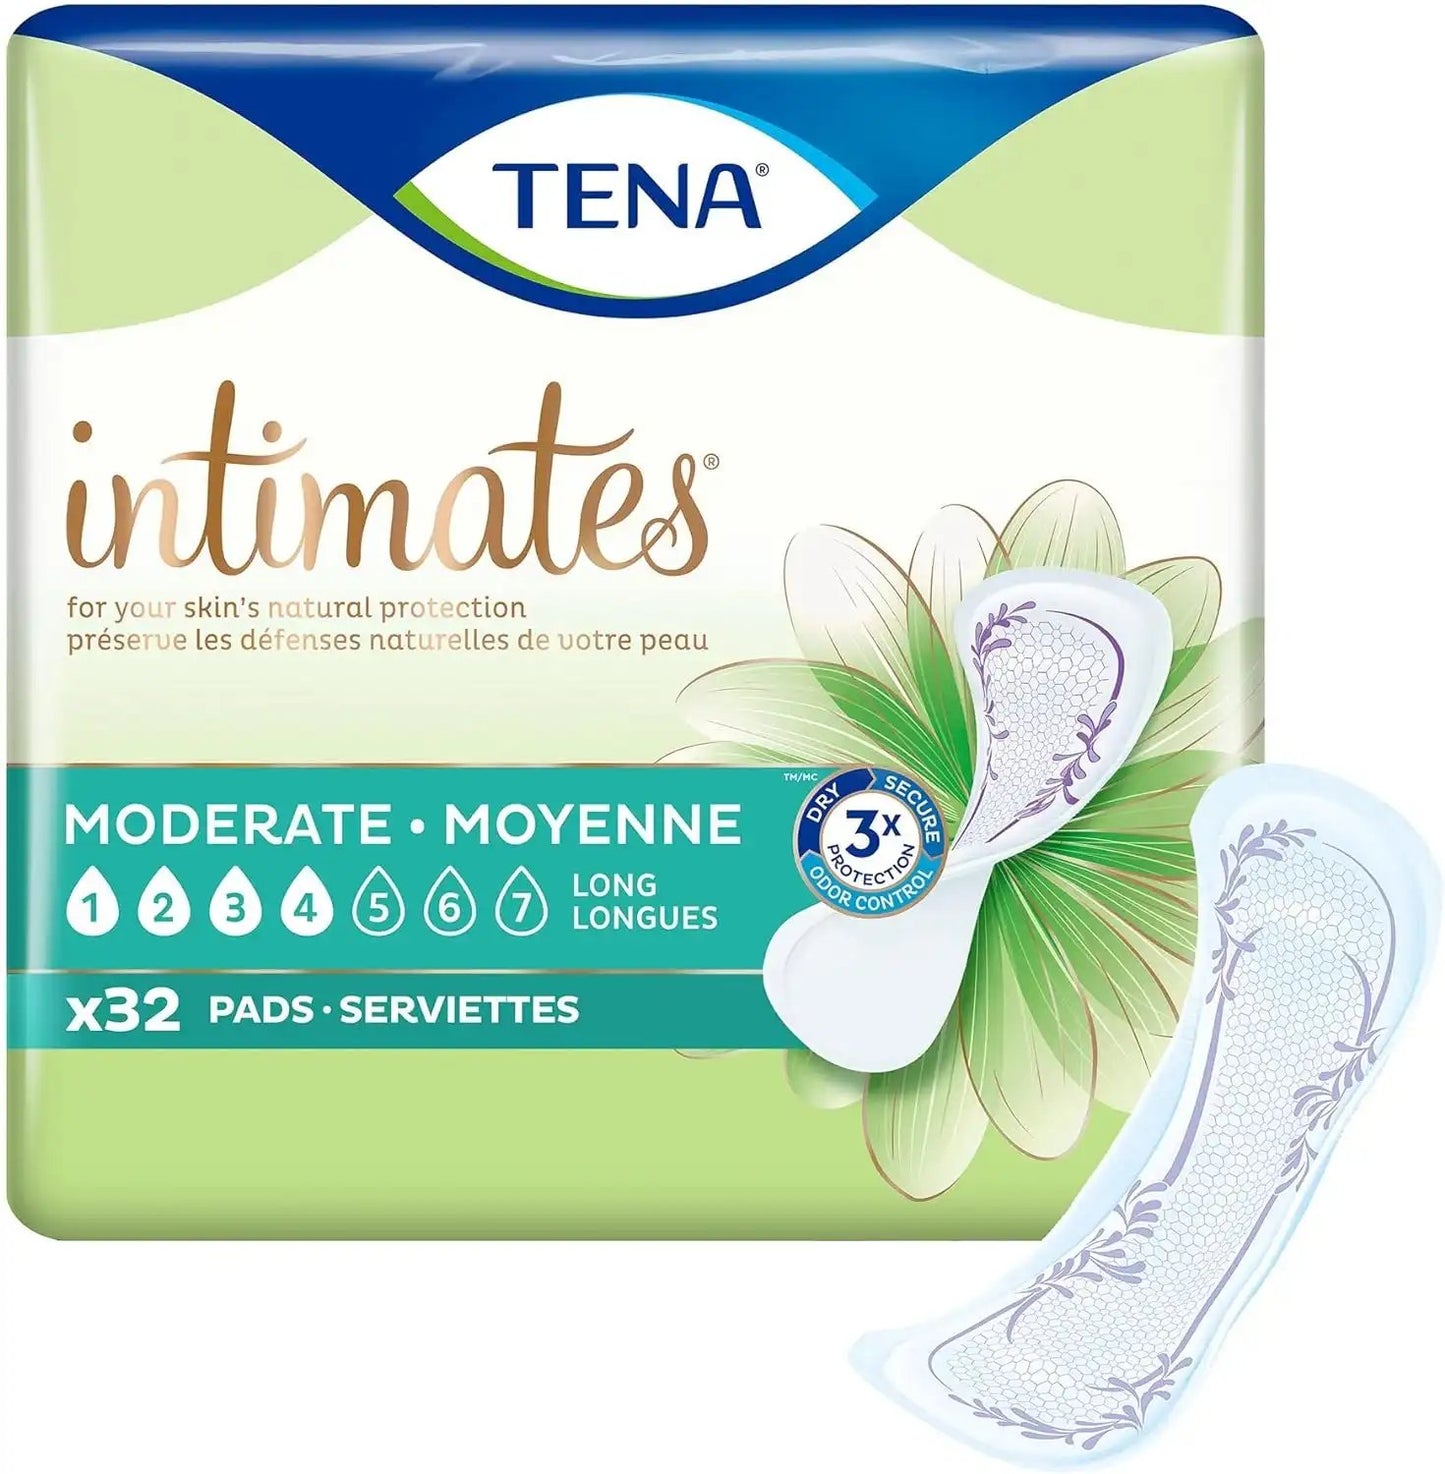 TENA Intimates Moderate Thin Pad Long, 13"